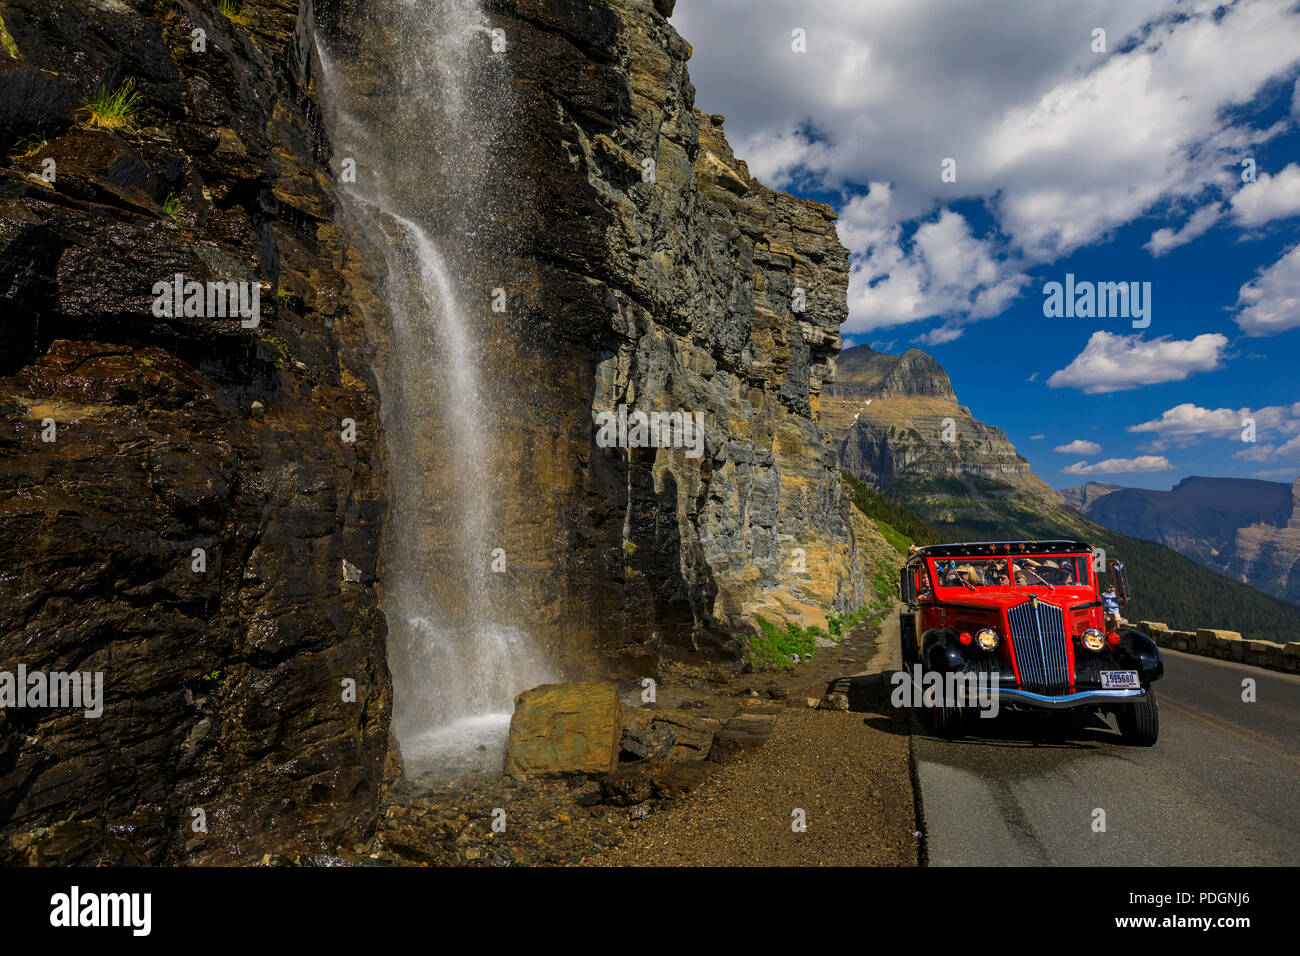 Eine tour bus ein Jammer stoppt mit einer Wagenladung von Menschen vor einem Wasserfall entlang der auf der Sonne Straße im Glacier National Park, Montana. Stockfoto